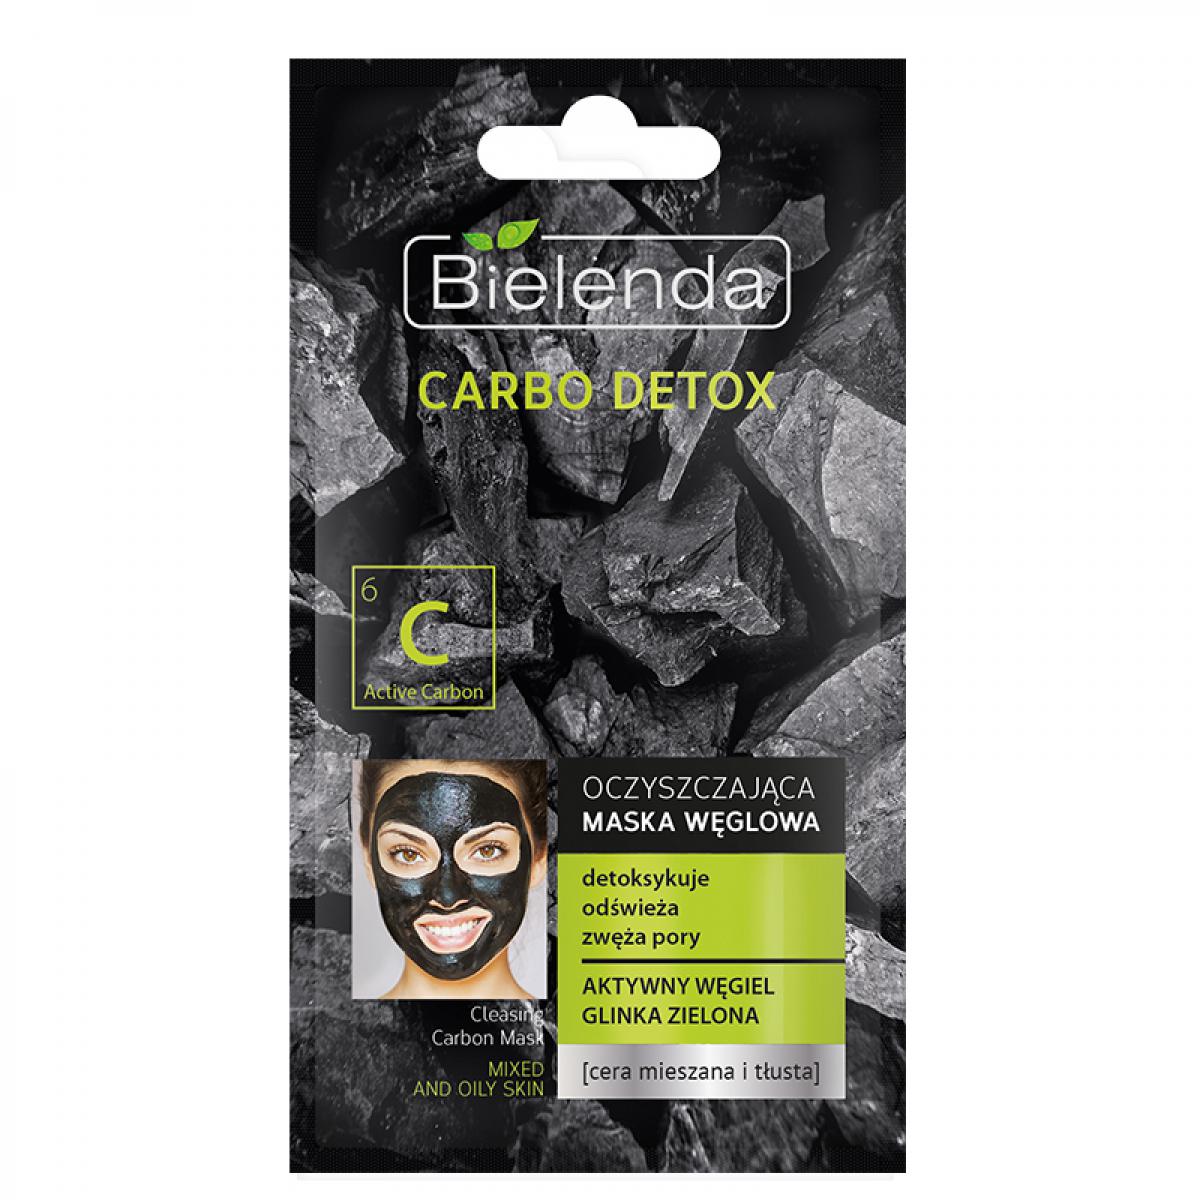 ماسک پاکسازی کننده زغال مناسب پوستهای چرب و مختلط - Carbo Detox Cleansing Masque For Combination And Oily Skin 8gr